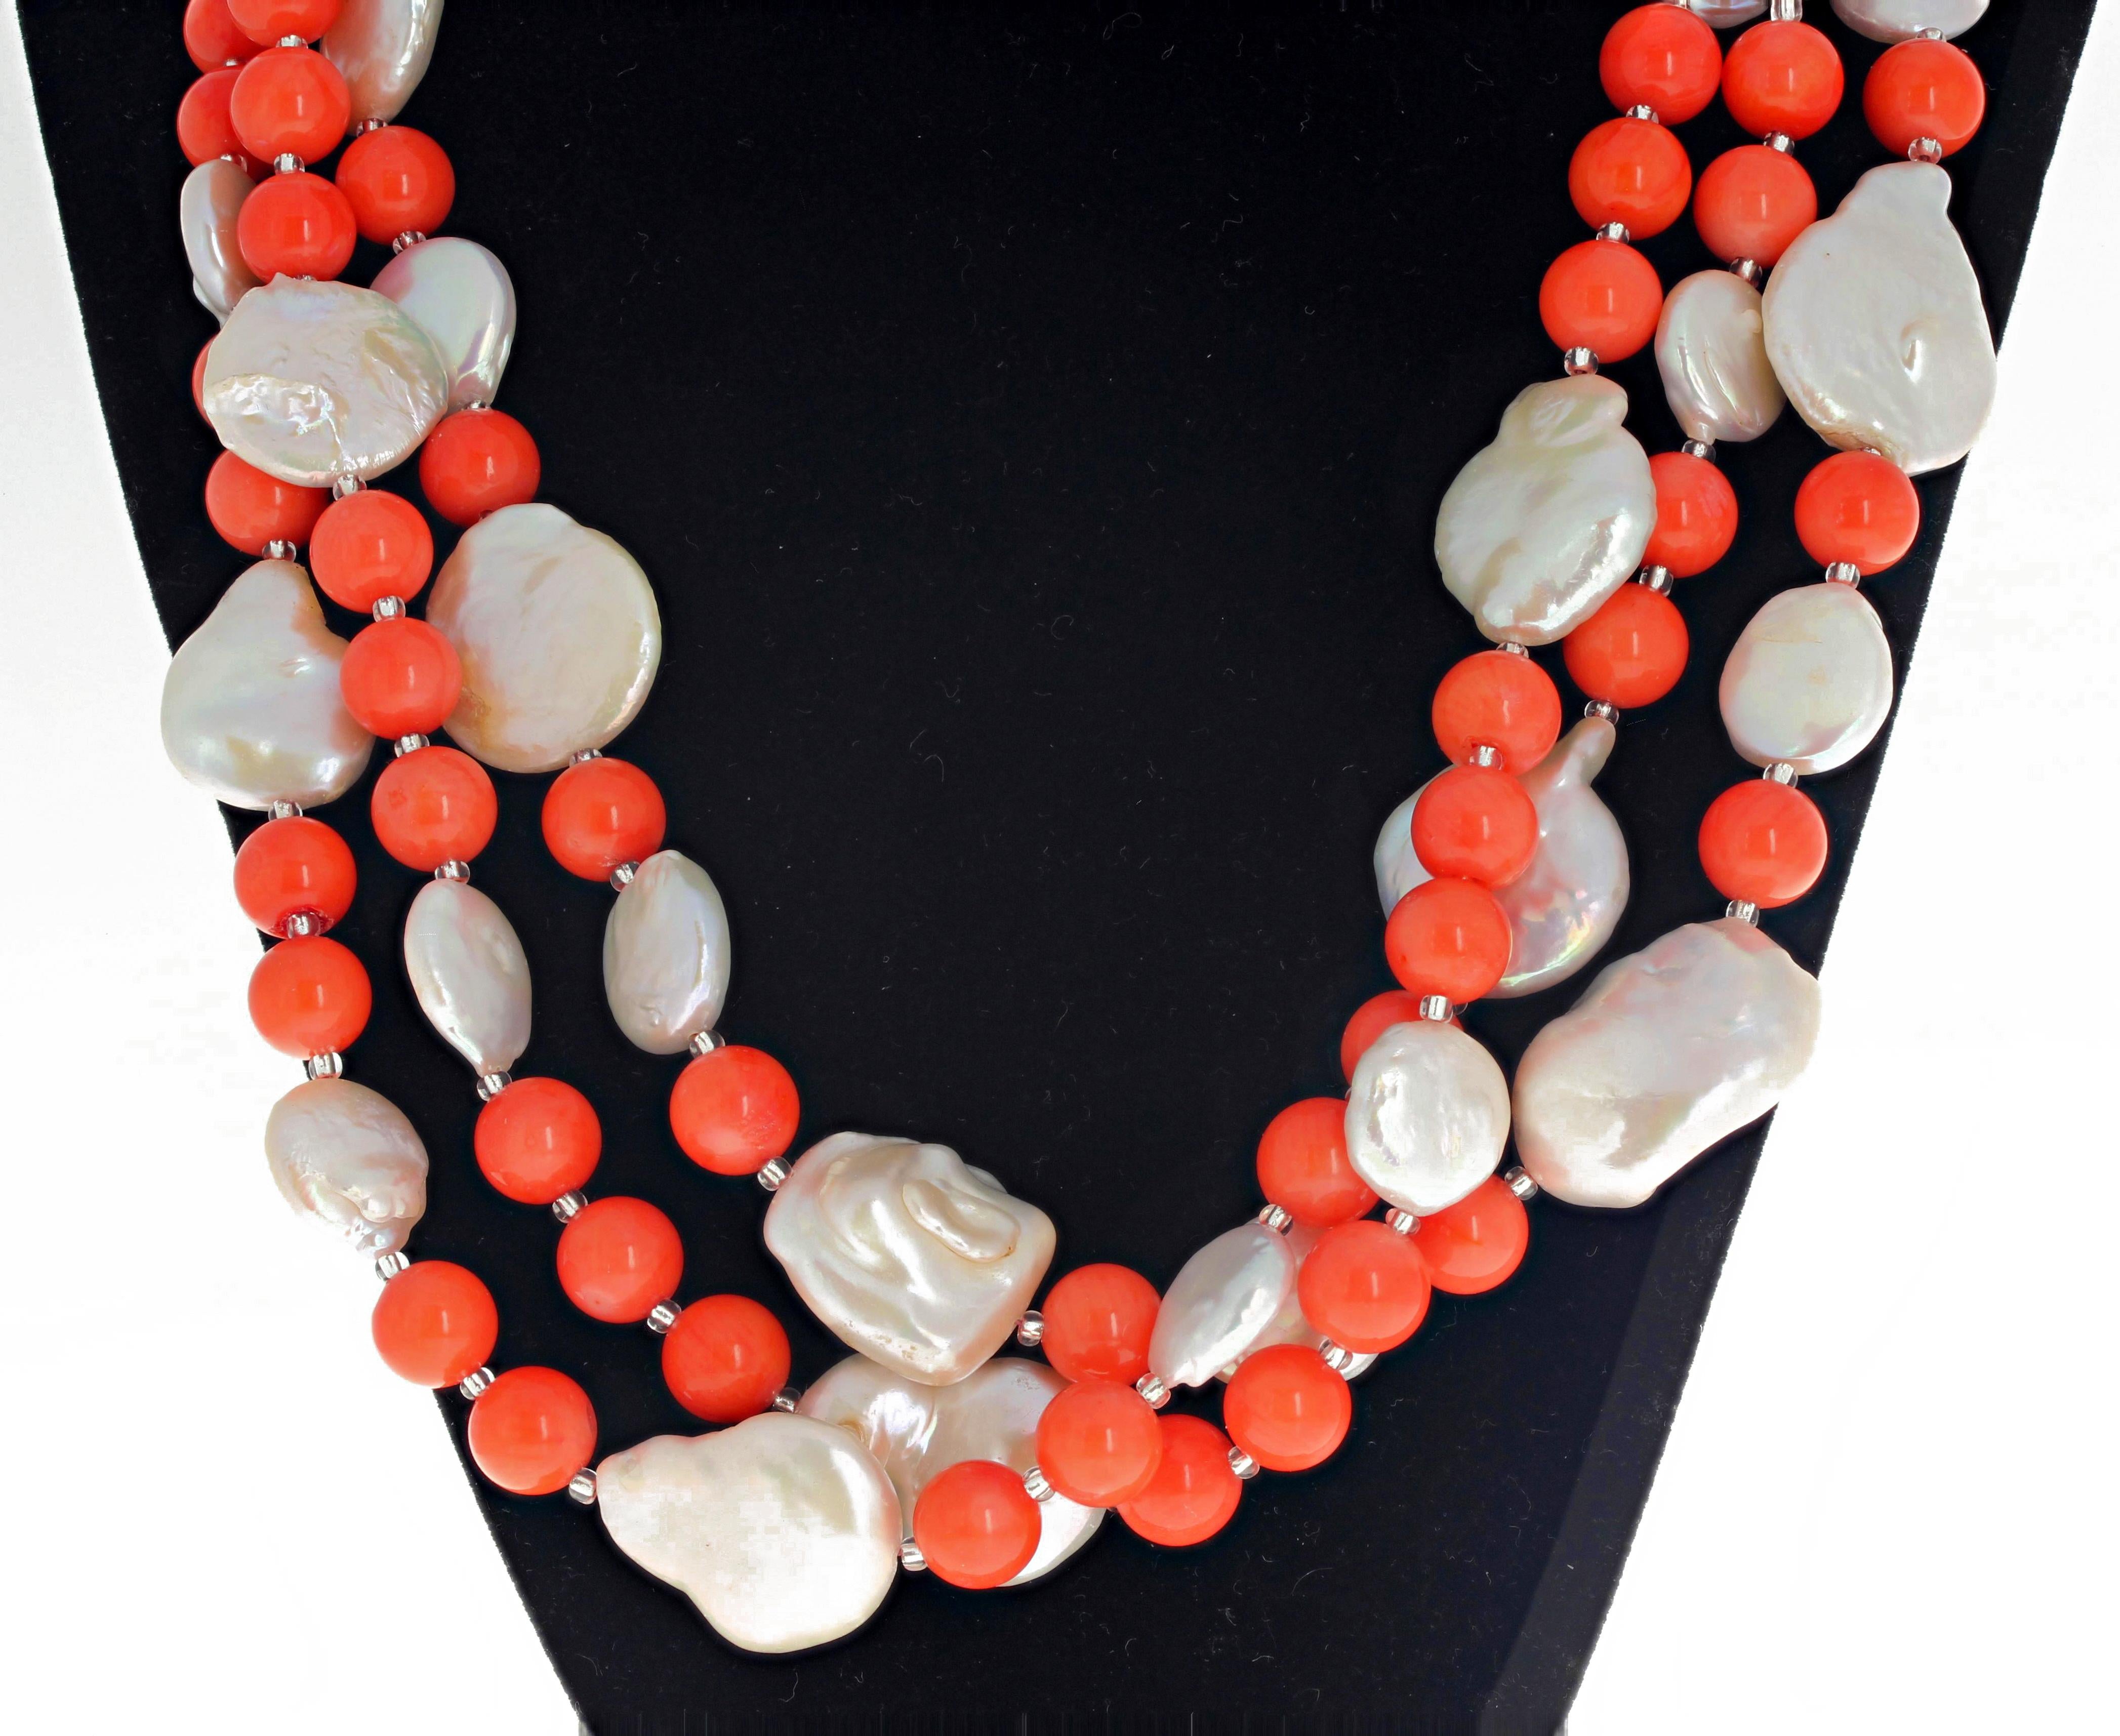 Diese große, dreisträngige, handgefertigte Halskette von Gemjunky ist elegant gestaltet und besteht aus runden, polierten, echten orangefarbenen Korallen, die mit runden, weißen Münzperlen und kleinen tschechischen Glitzersteinen verziert sind. Sie